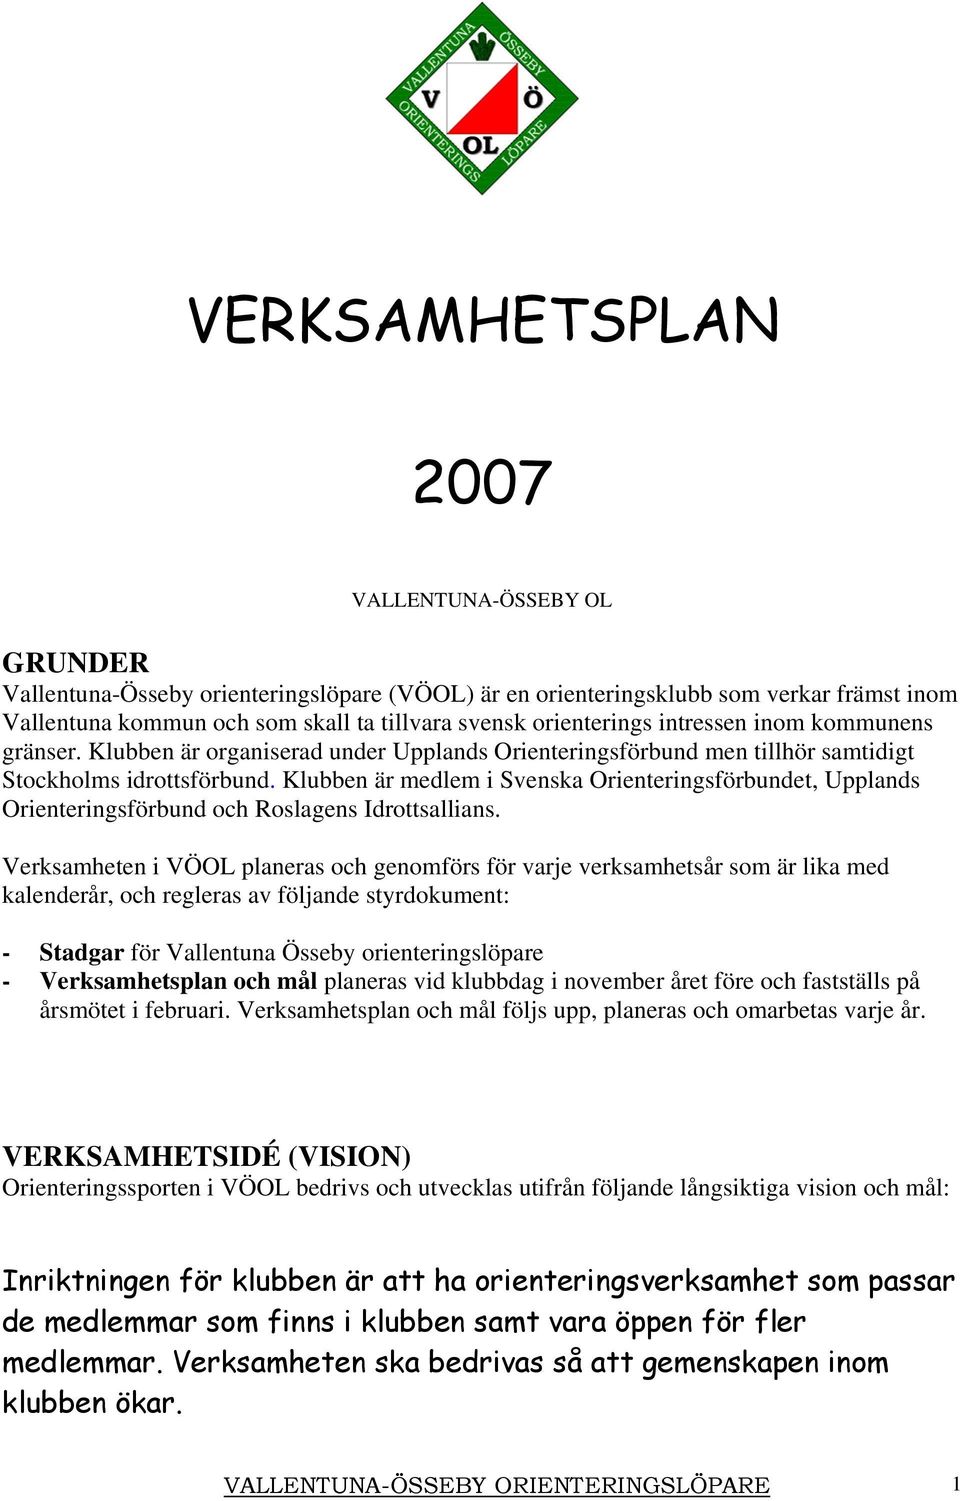 Klubben är medlem i Svenska Orienteringsförbundet, Upplands Orienteringsförbund och Roslagens Idrottsallians.